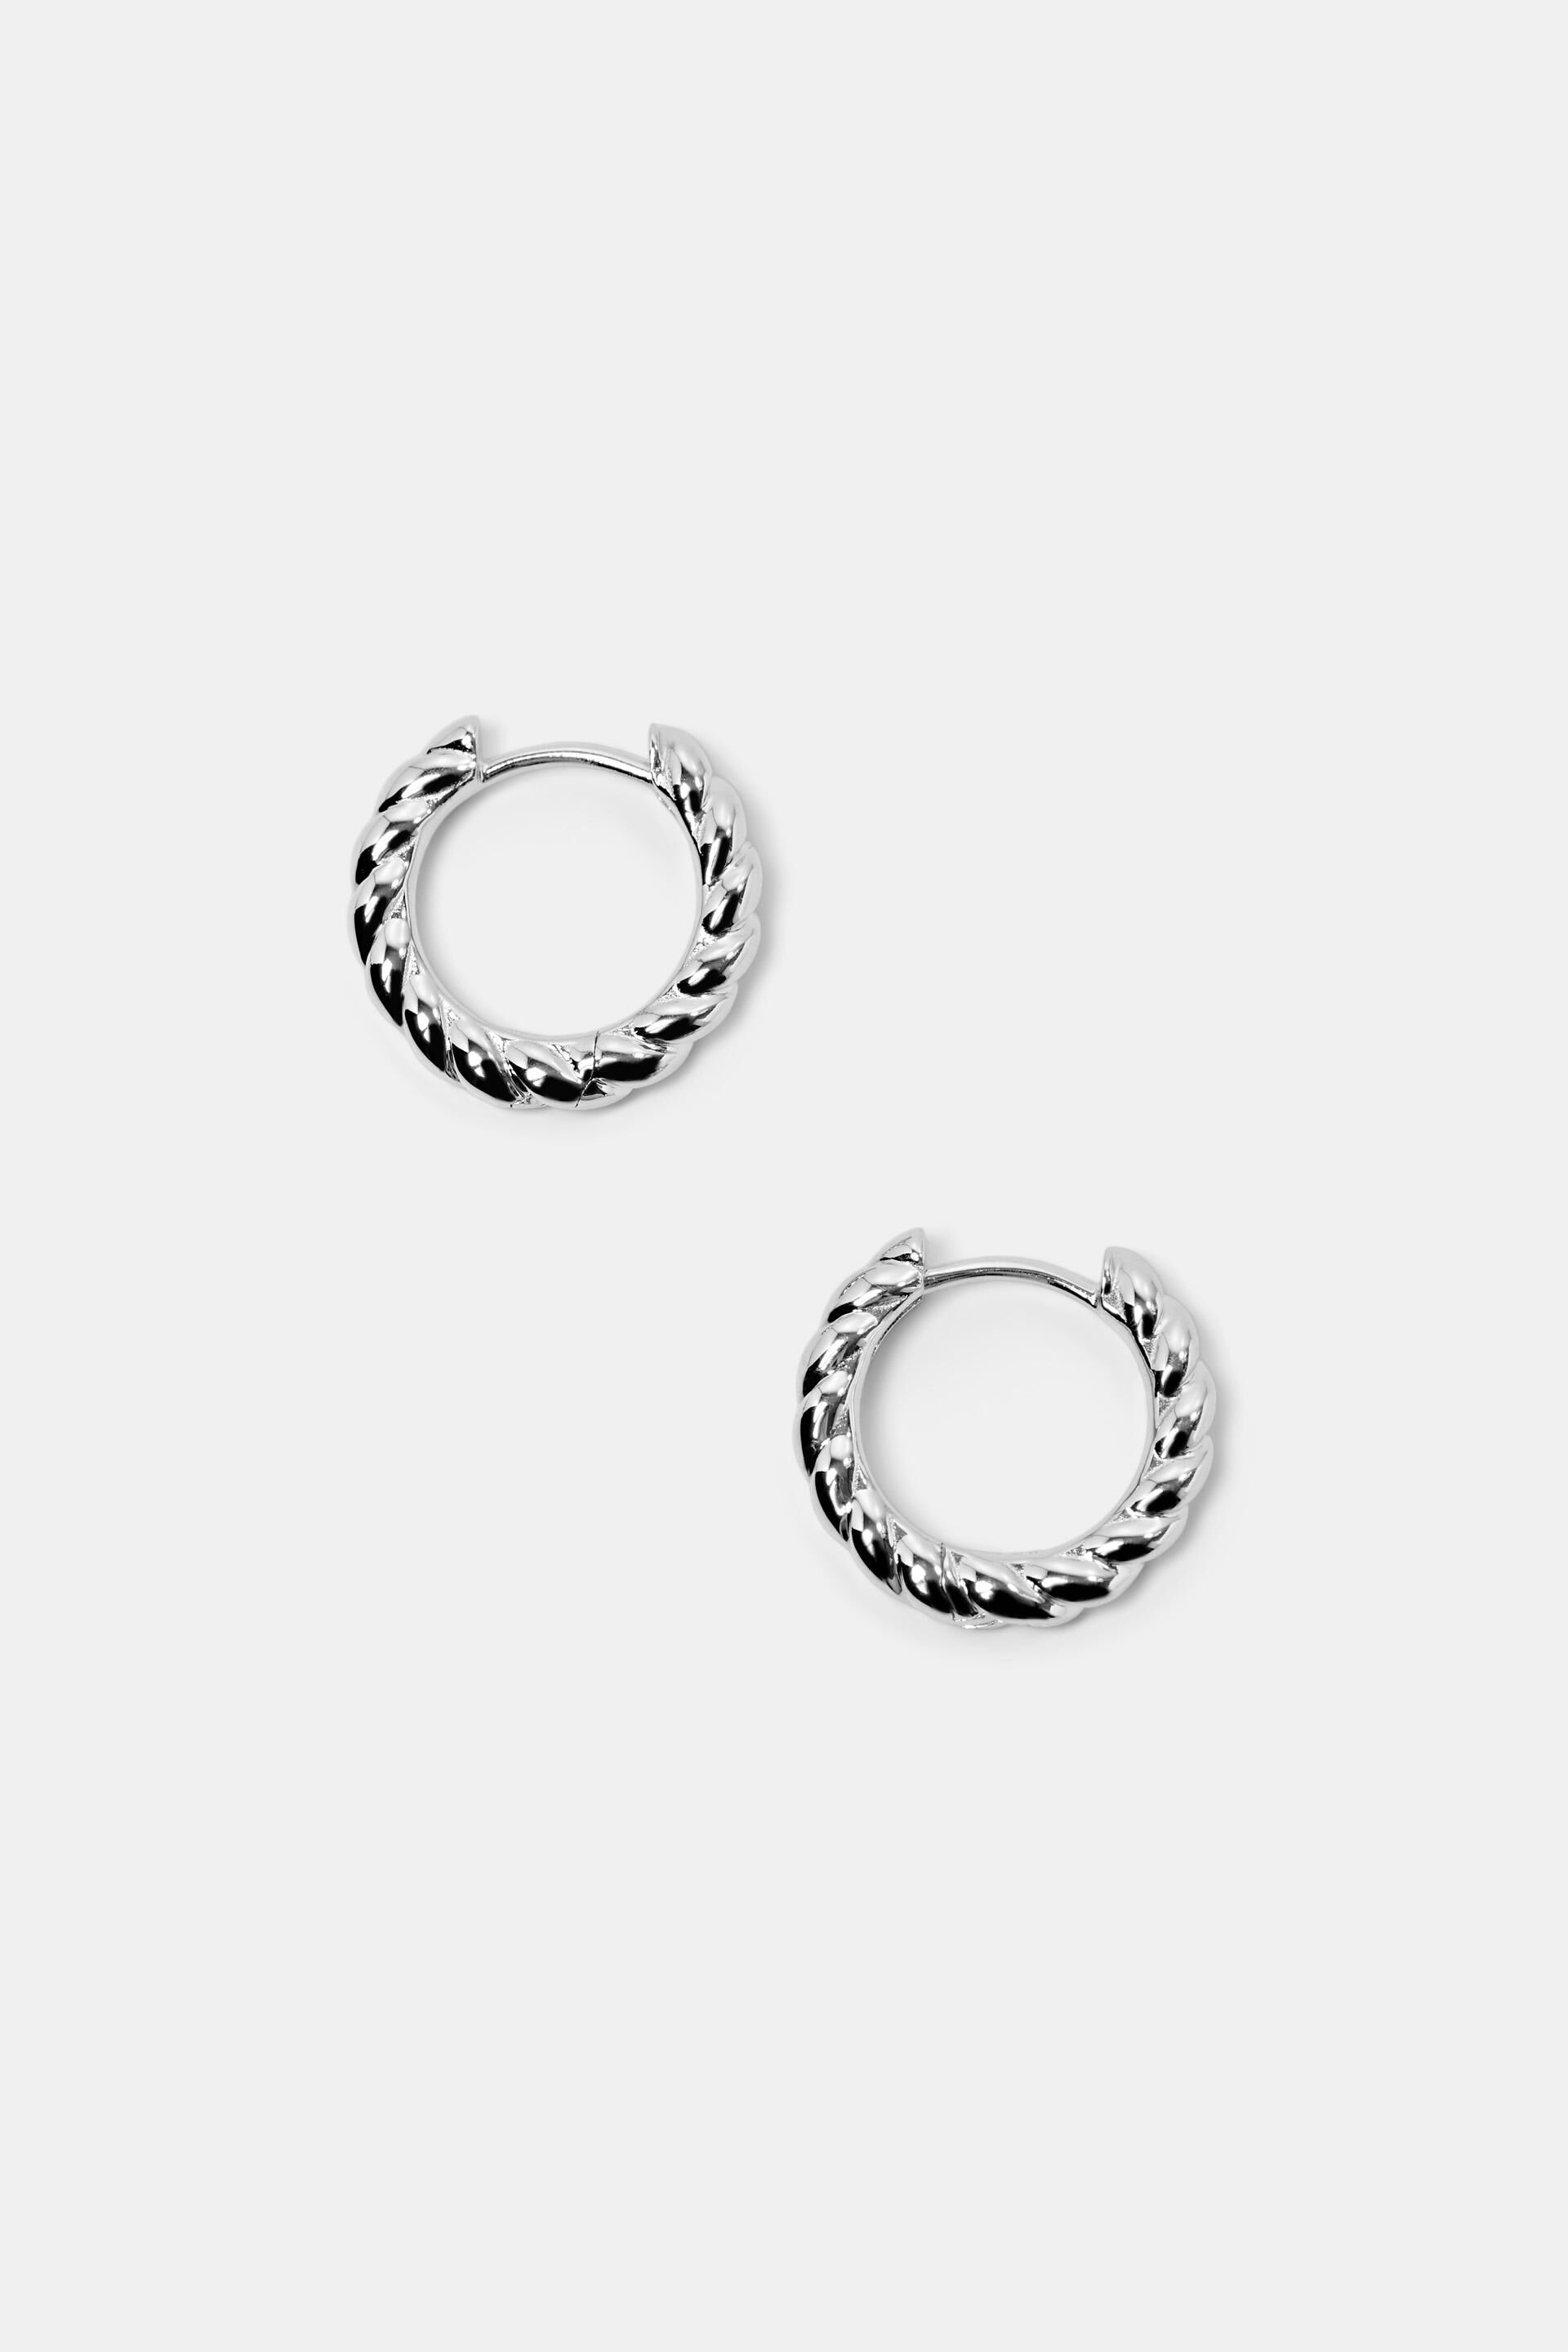 Esprit Hoop Earrings Sterling Silver Twisted